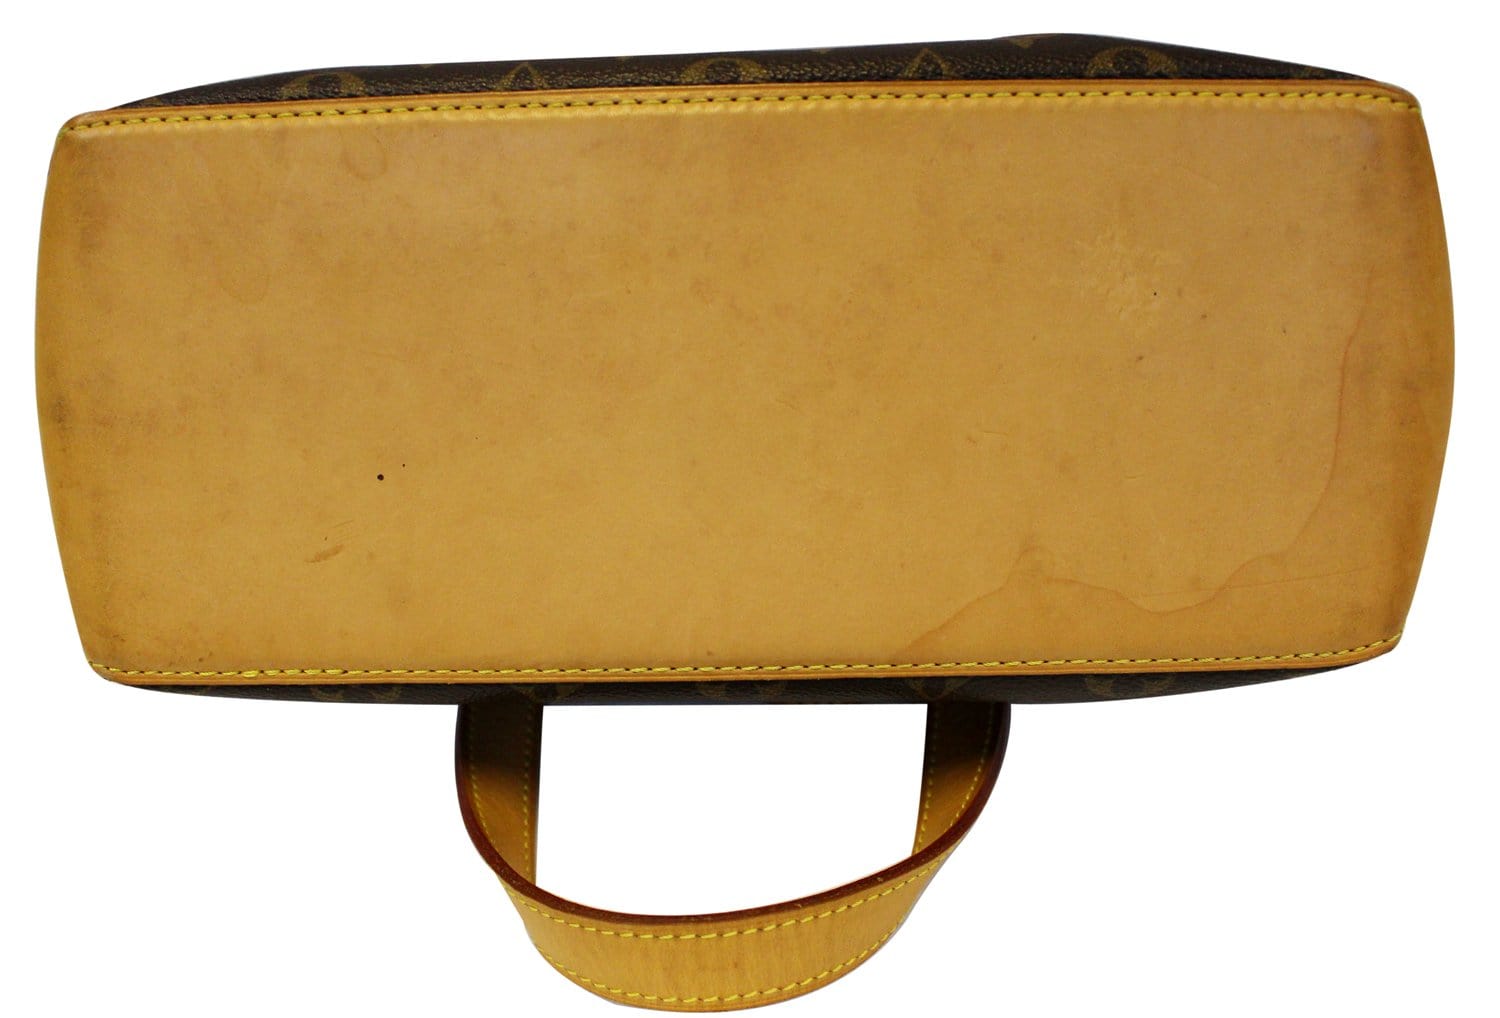 LOUIS VUITTON Monogram Canvas Cabas Piano Shoulder Bag - Sale